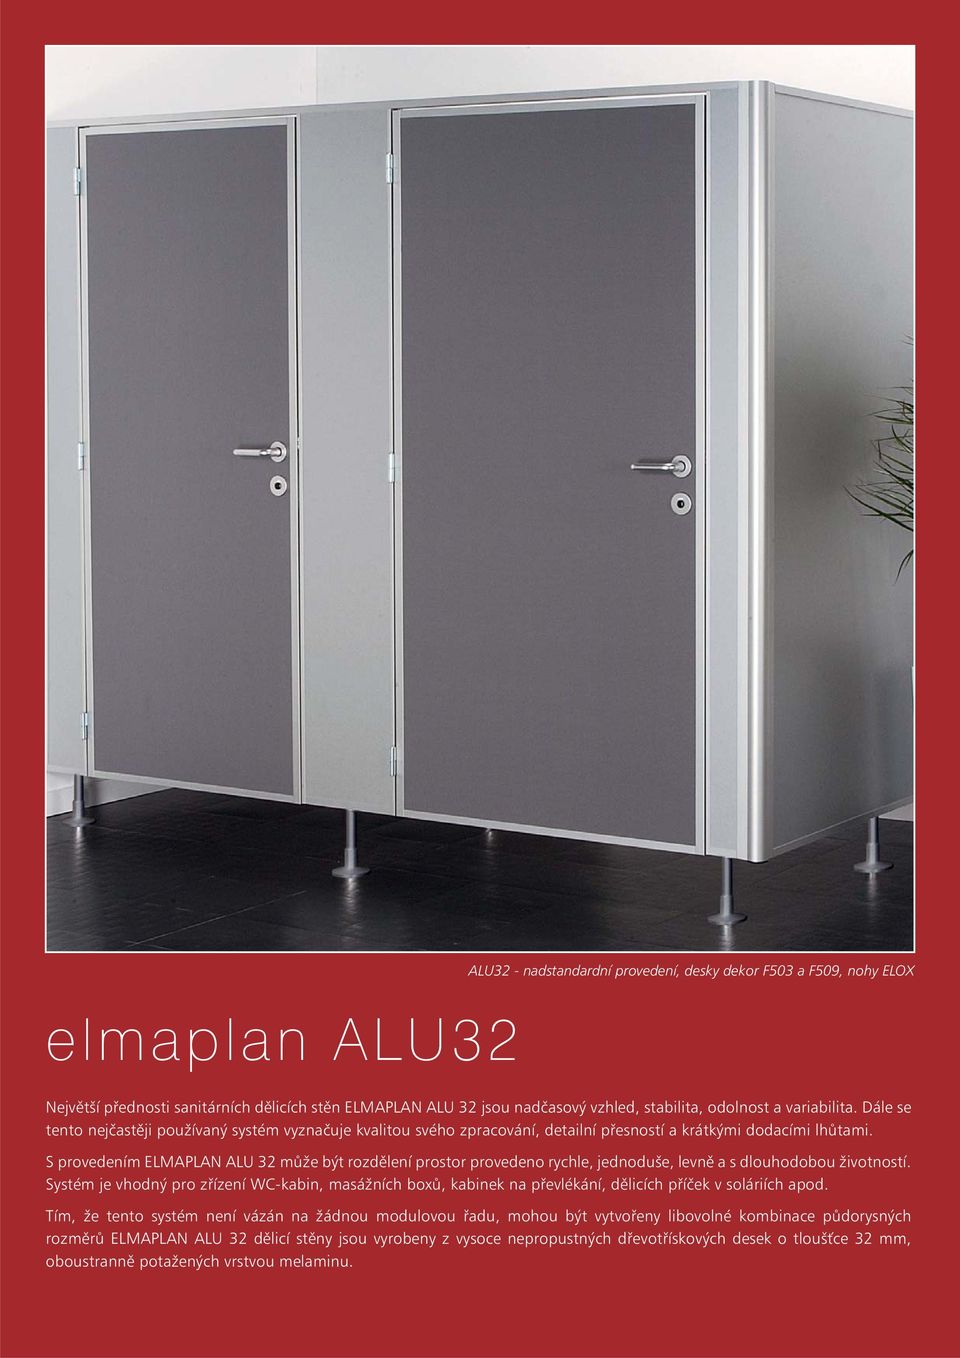 S provedením ELMAPLAN ALU 32 může být rozdělení prostor provedeno rychle, jednoduše, levně a s dlouhodobou životností.